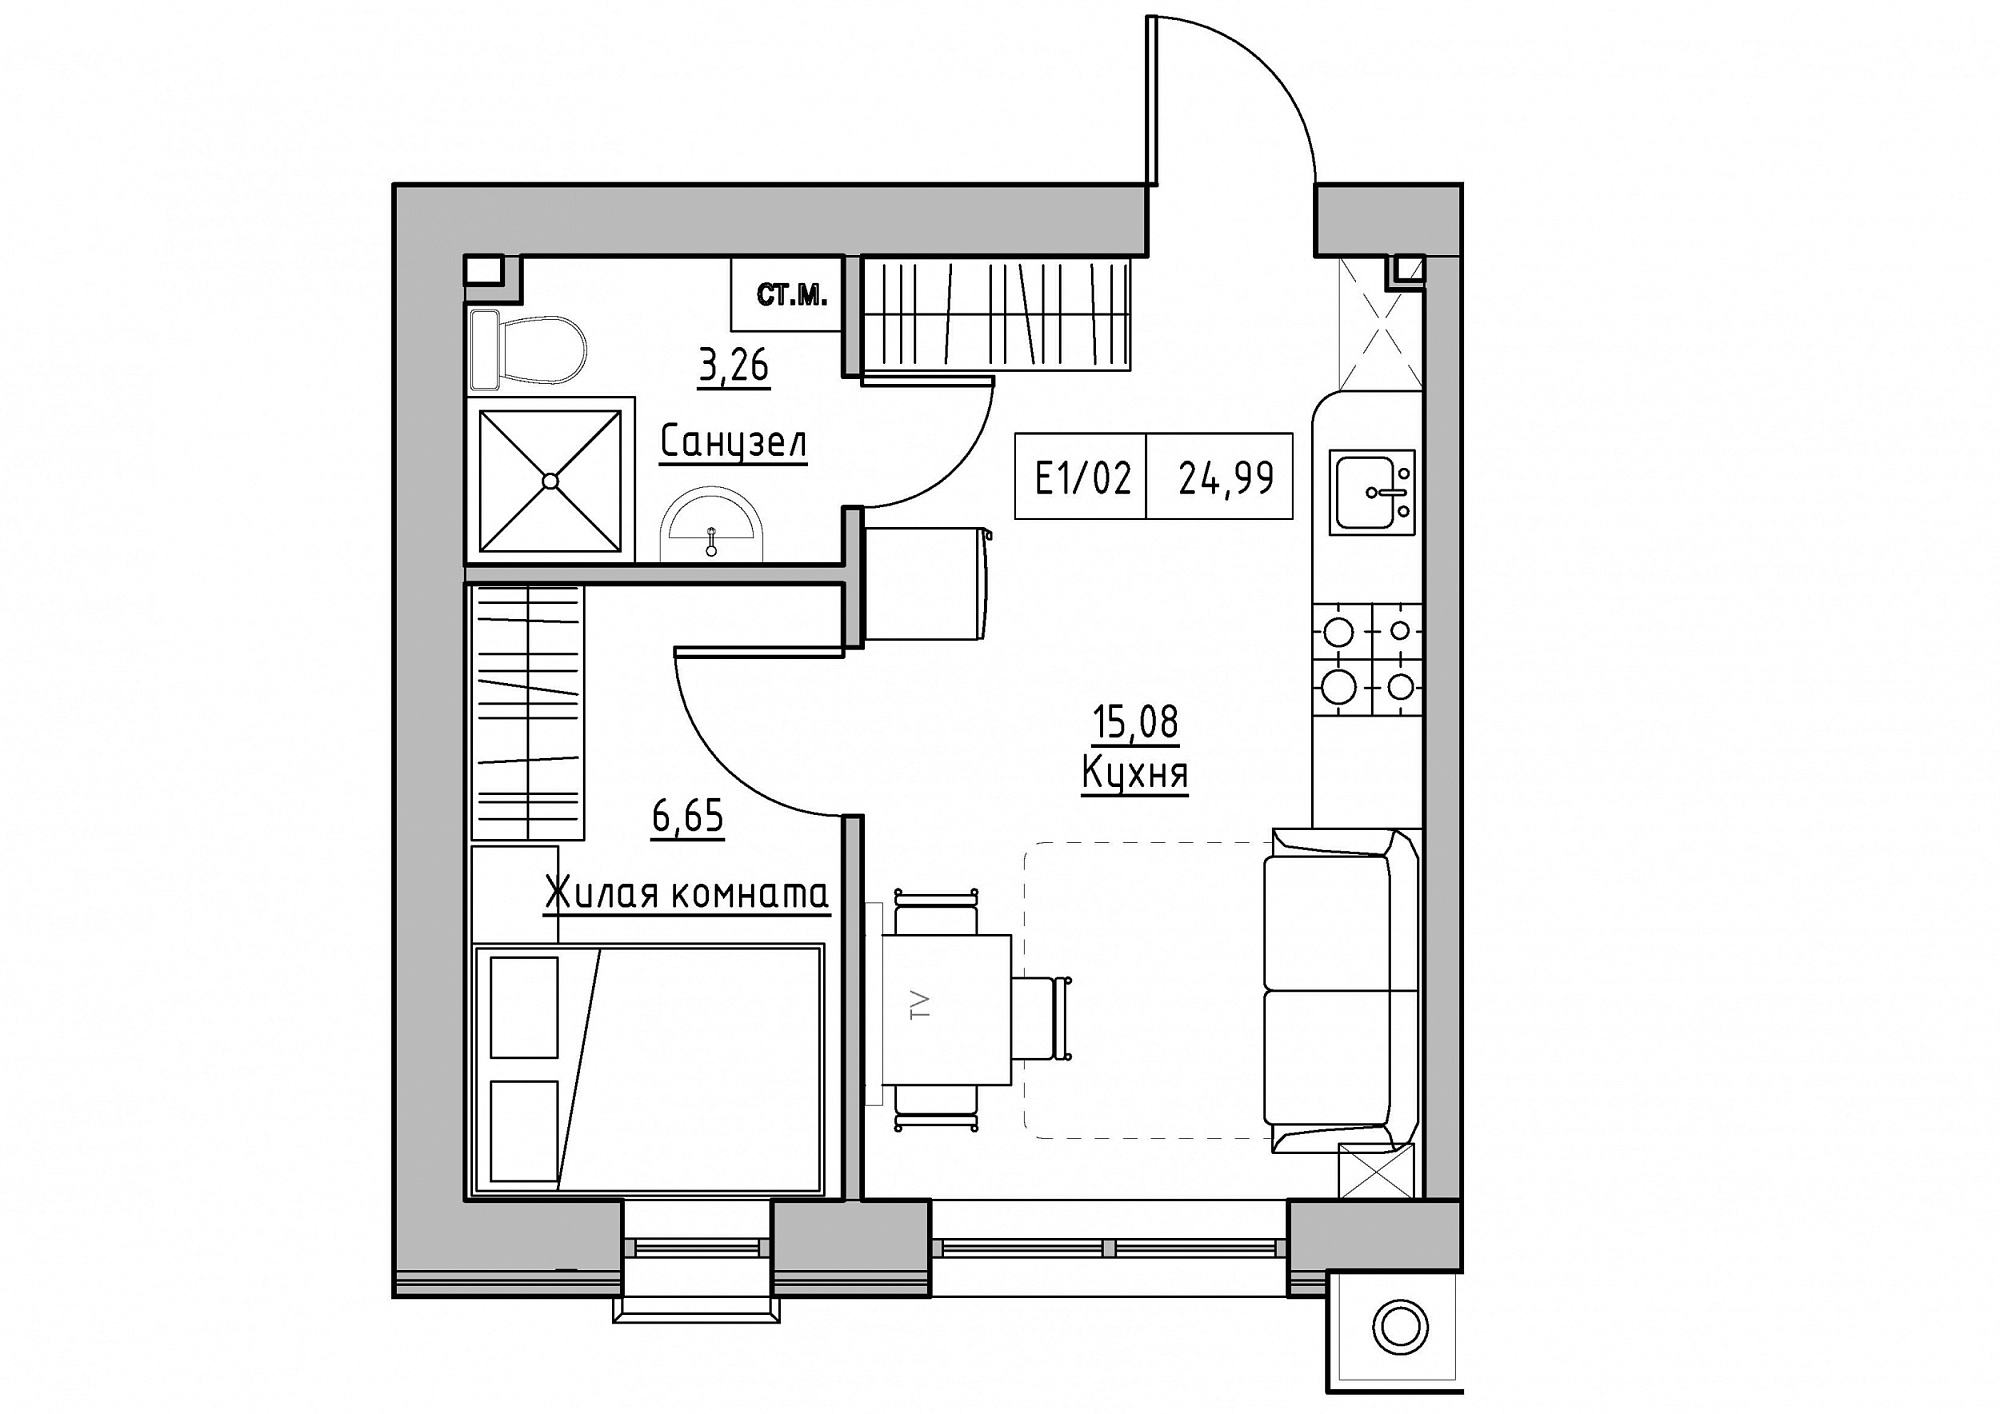 Планировка 1-к квартира площей 24.99м2, KS-011-03/0012.